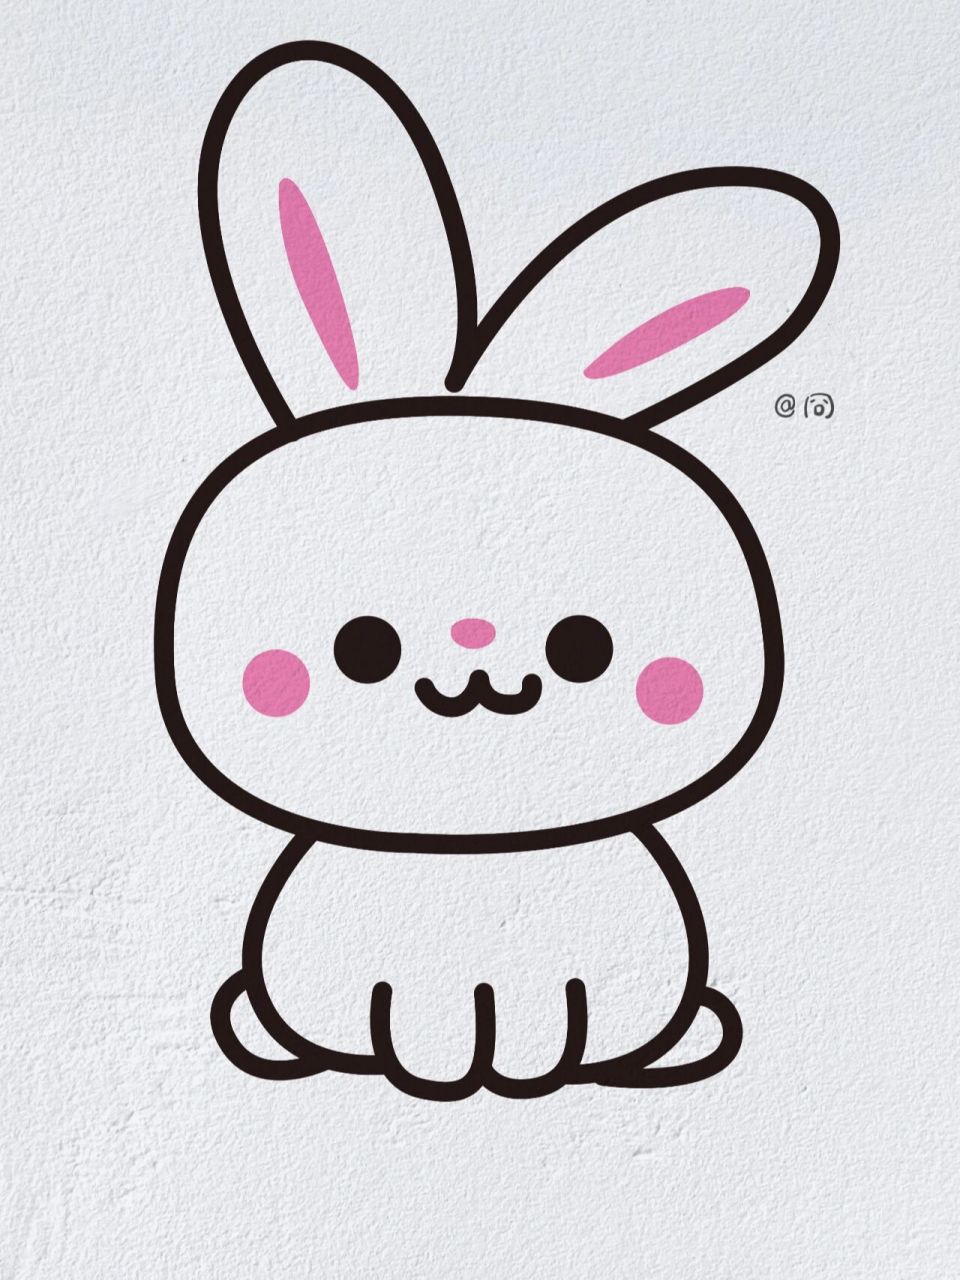 小白兔的最简单画法图片